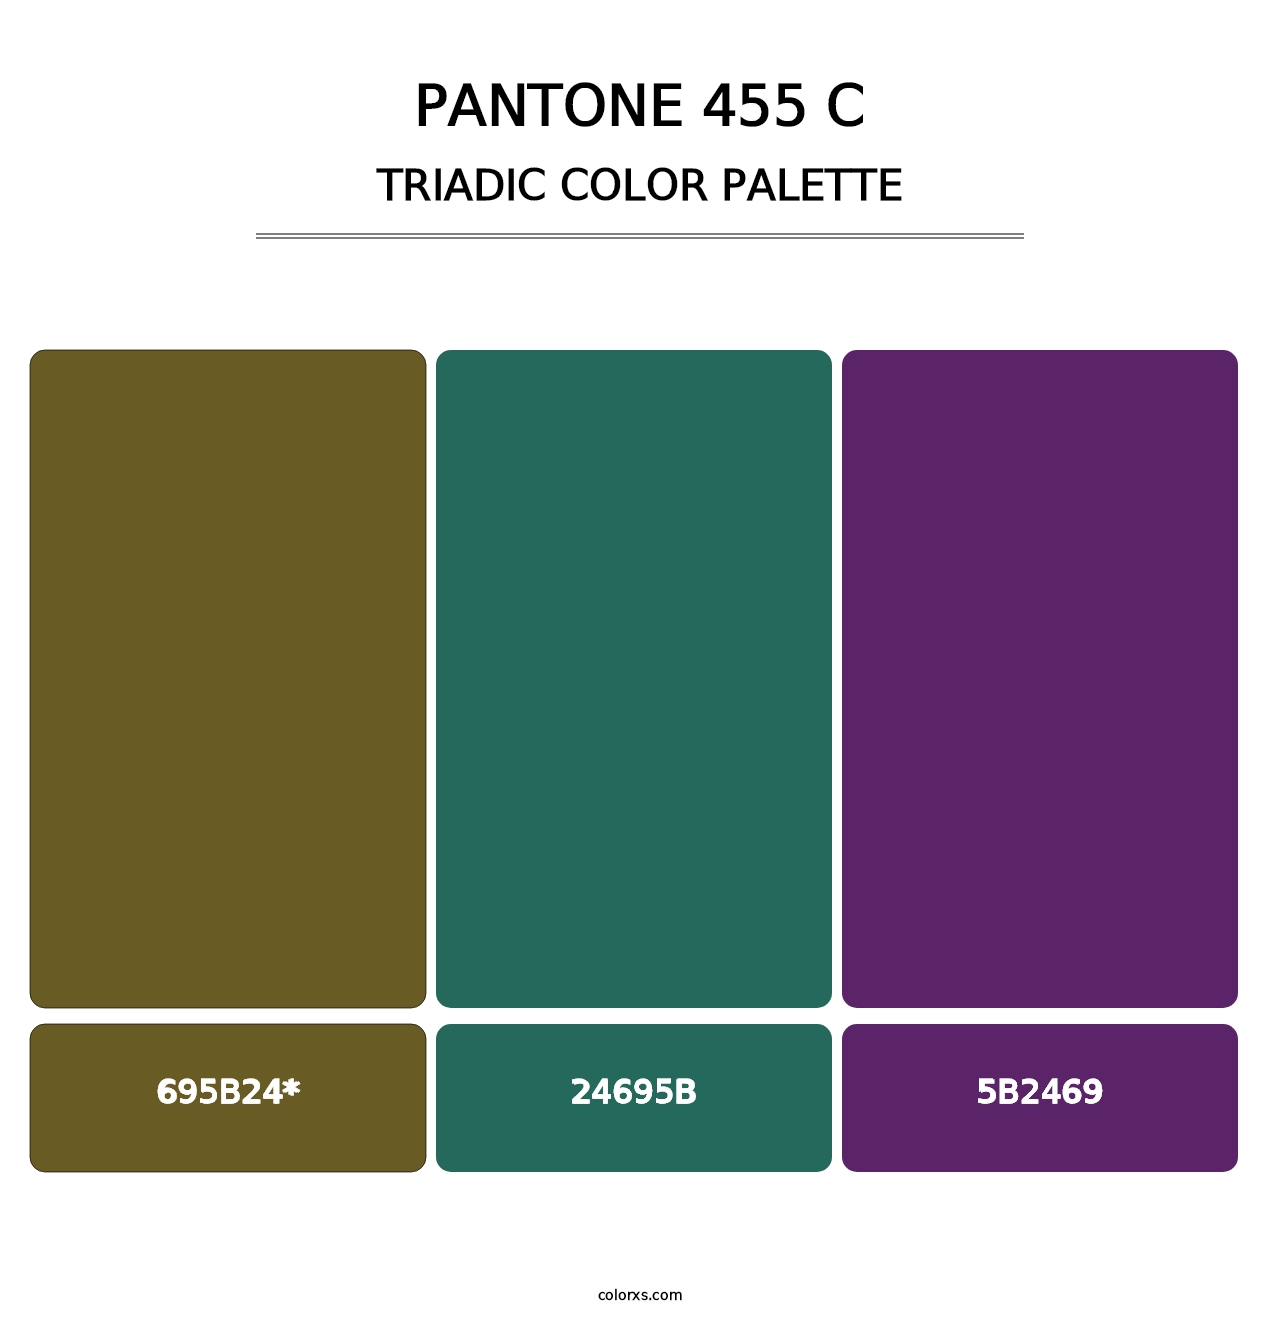 PANTONE 455 C - Triadic Color Palette